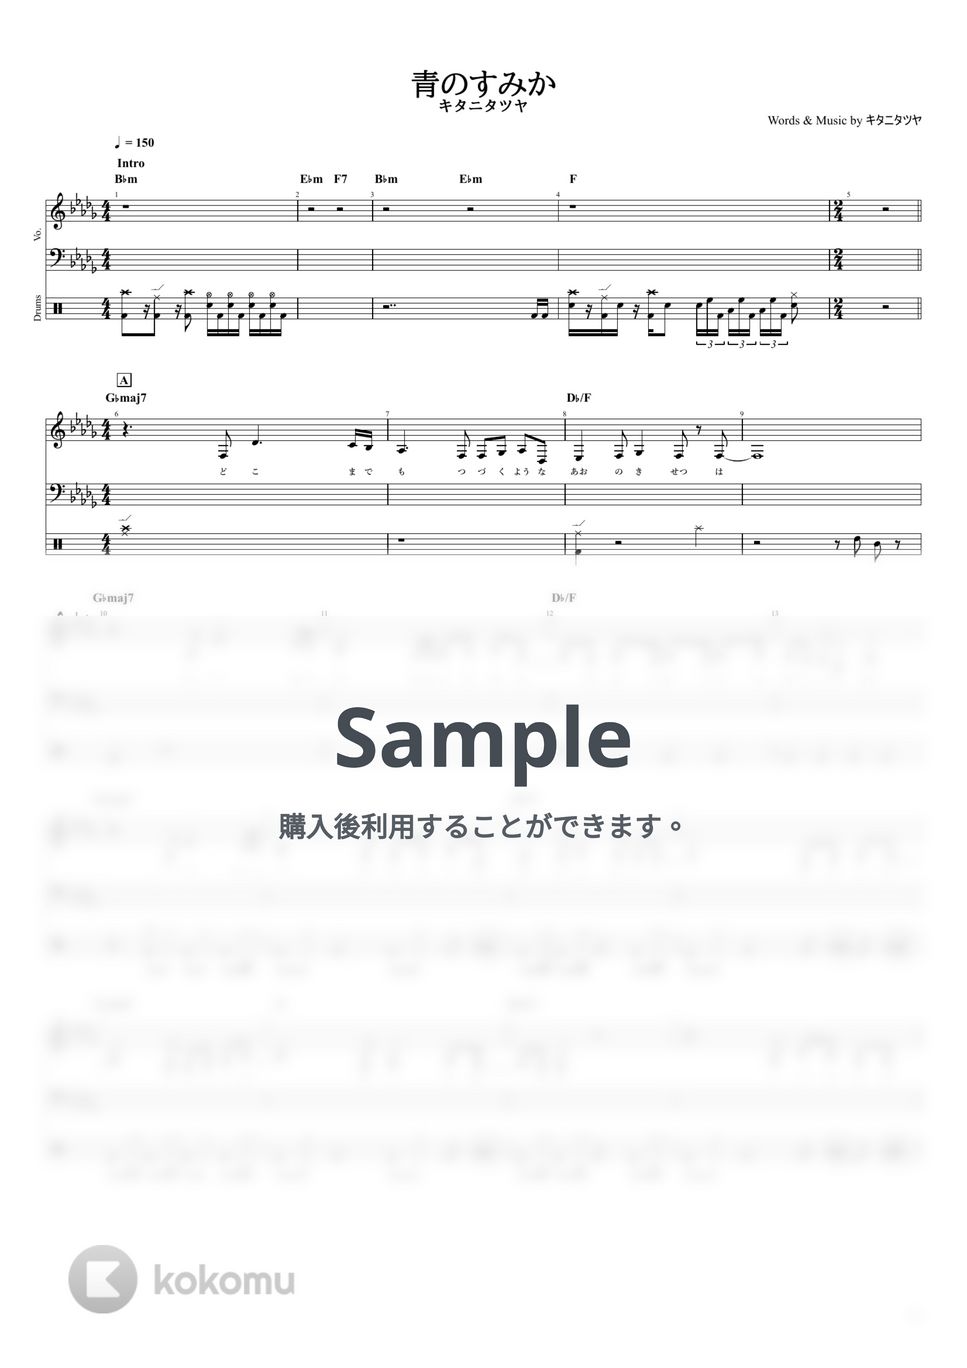 キタニタツヤ - 青のすみか (【ドラム譜】/ キタニタツヤ) by ヘクソ